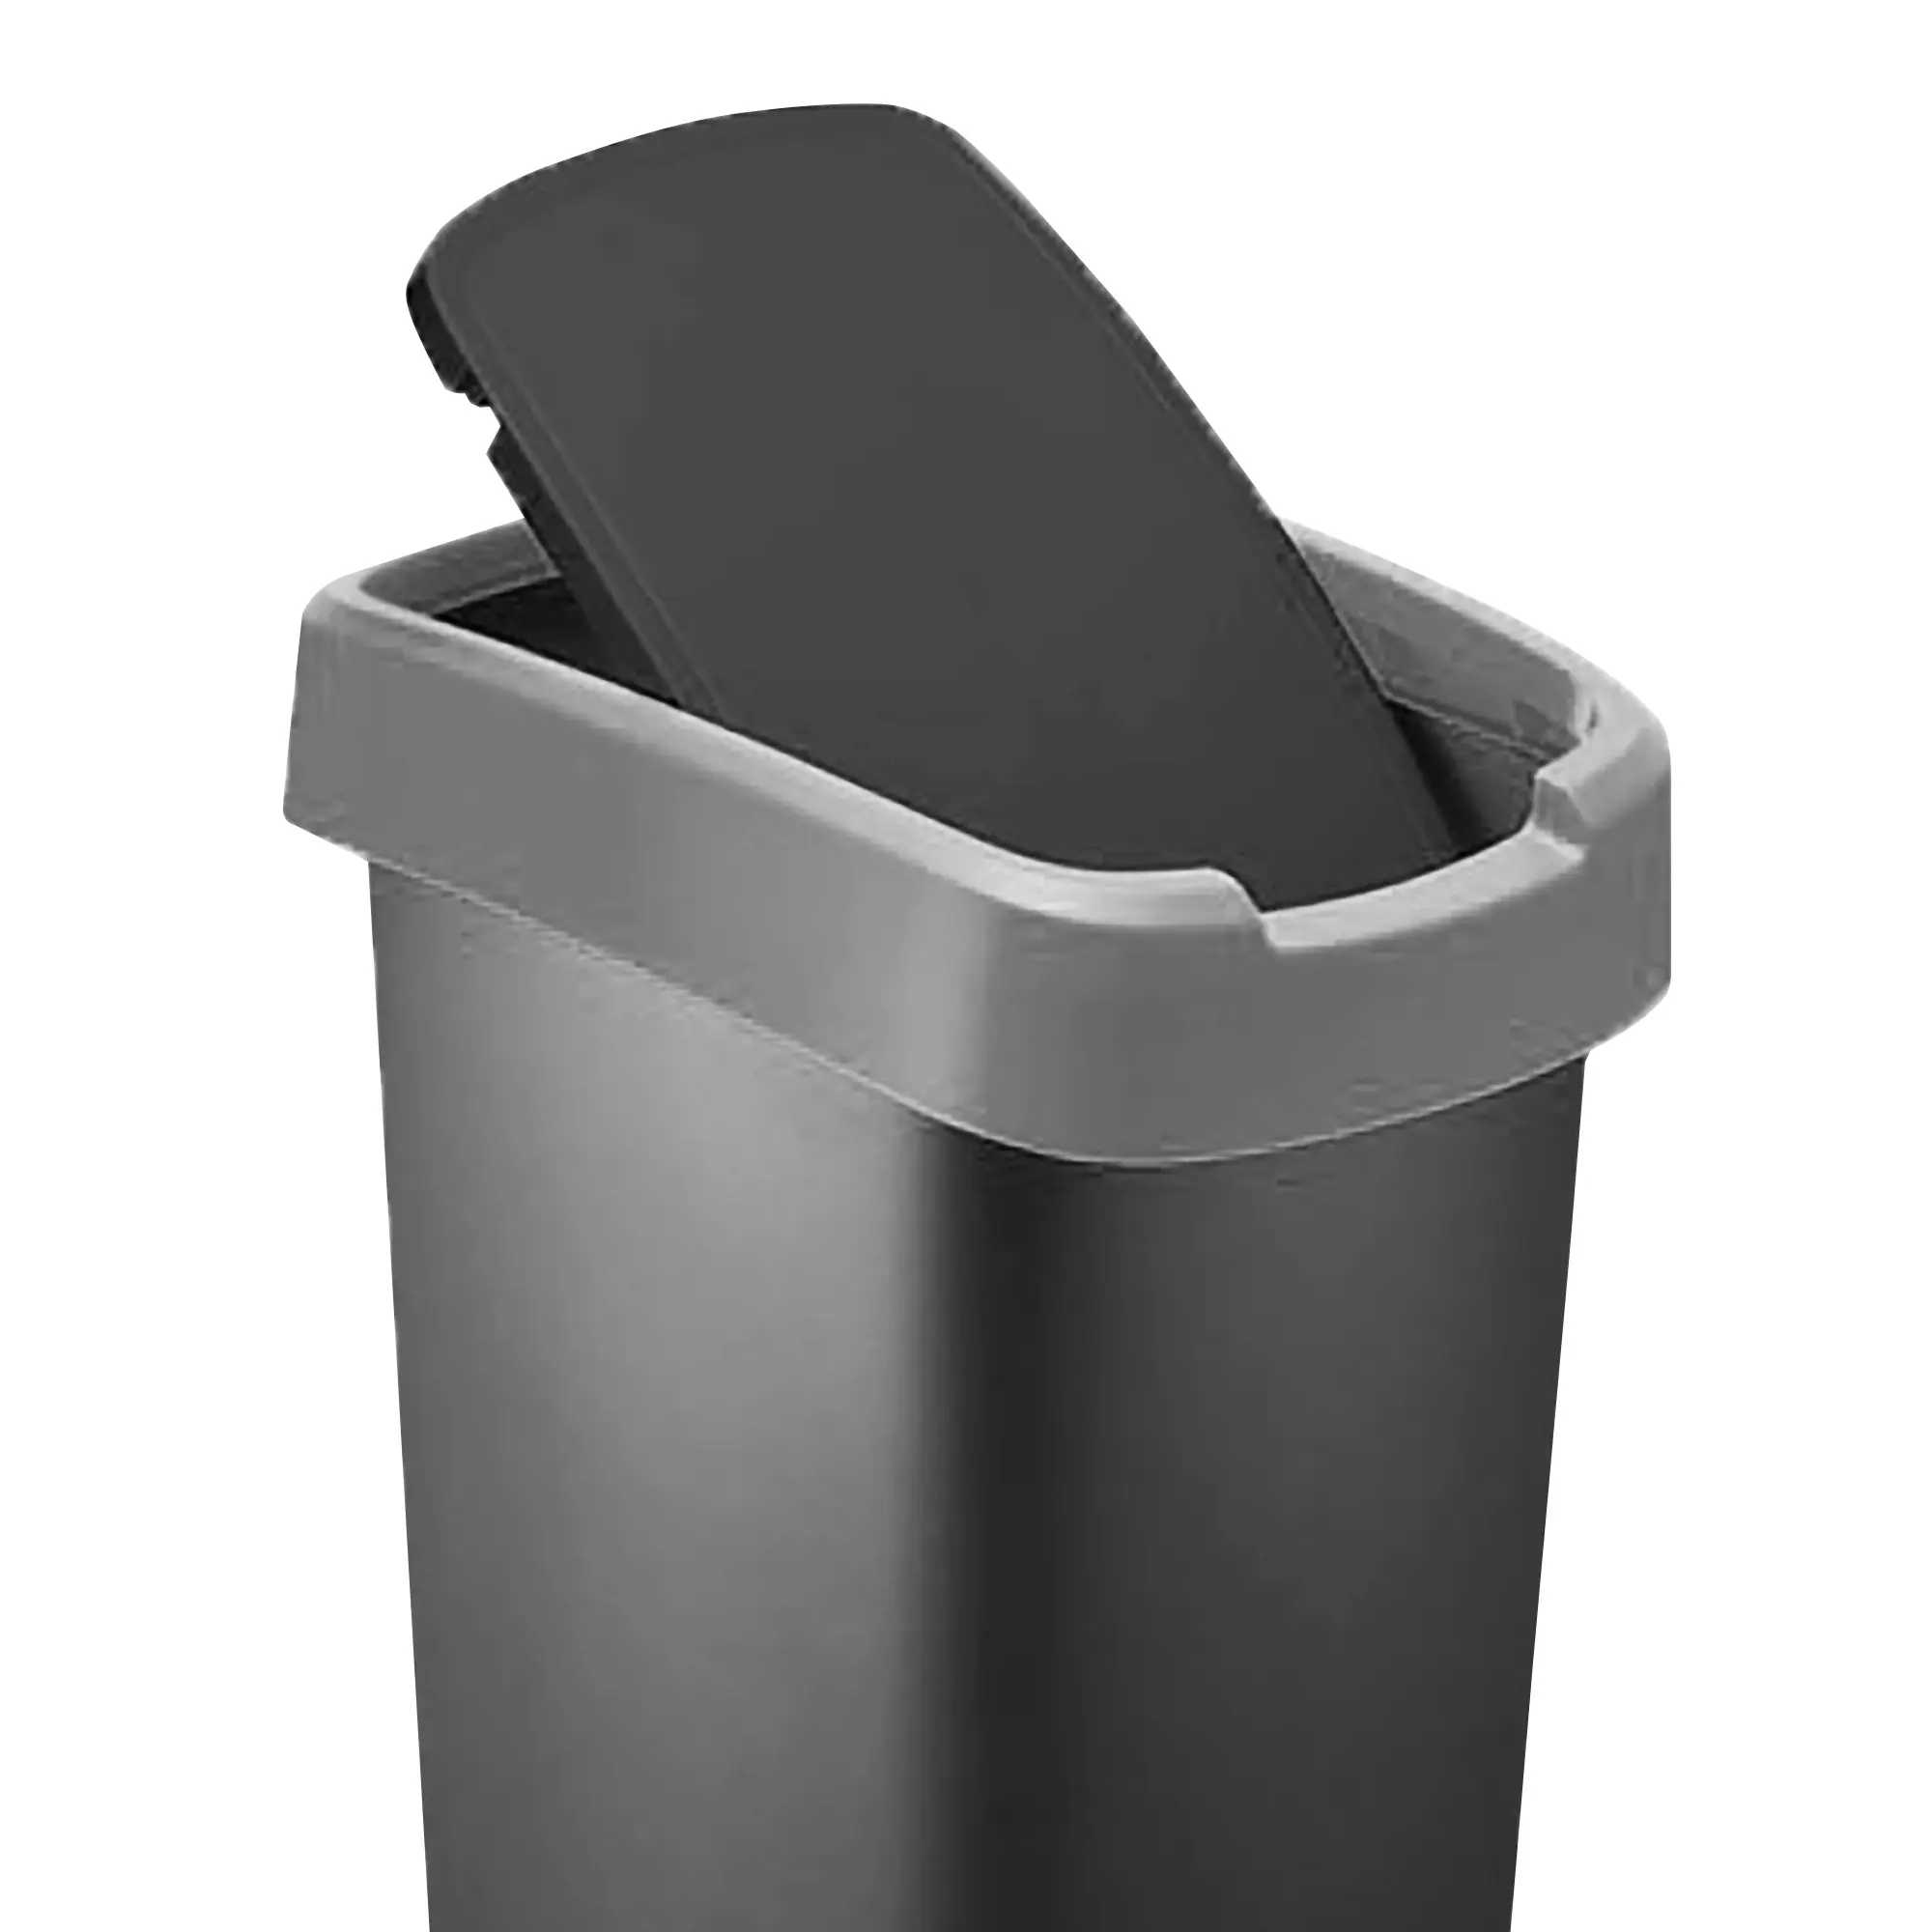 RothoPro Twist Abfallbehälter 25 Liter schwarz/silber Schwingfunktion 59135391